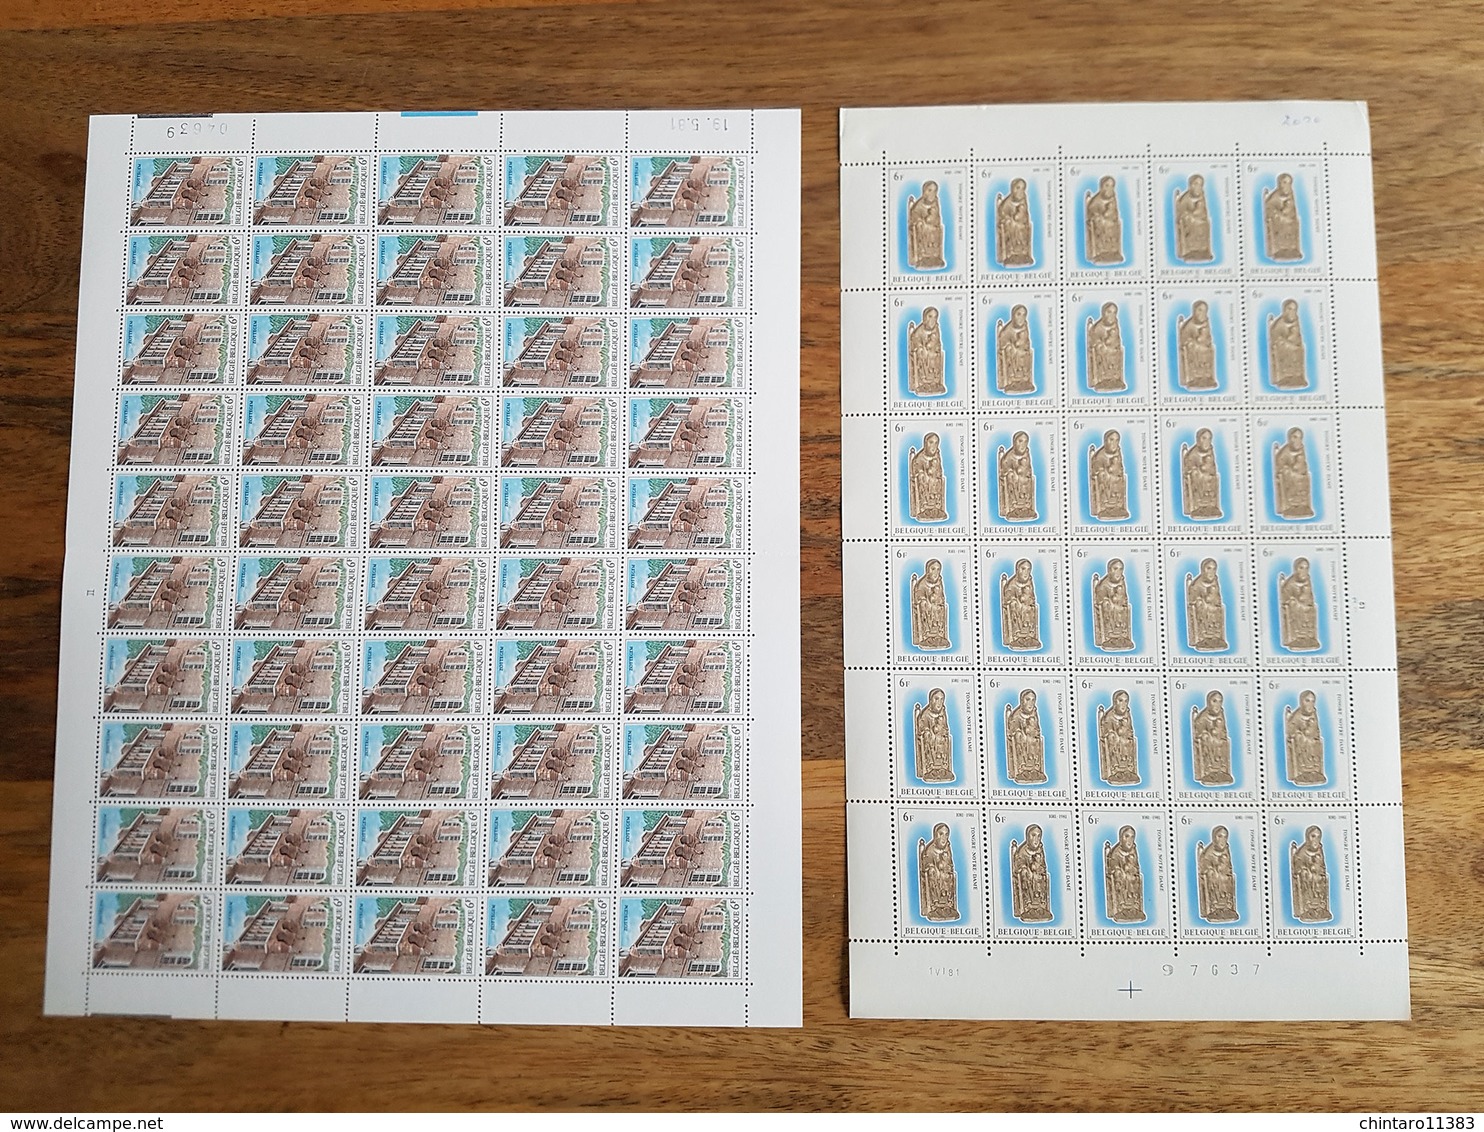 Lot feuilles complètes/incomplètes de timbres Belgique - Année 1981